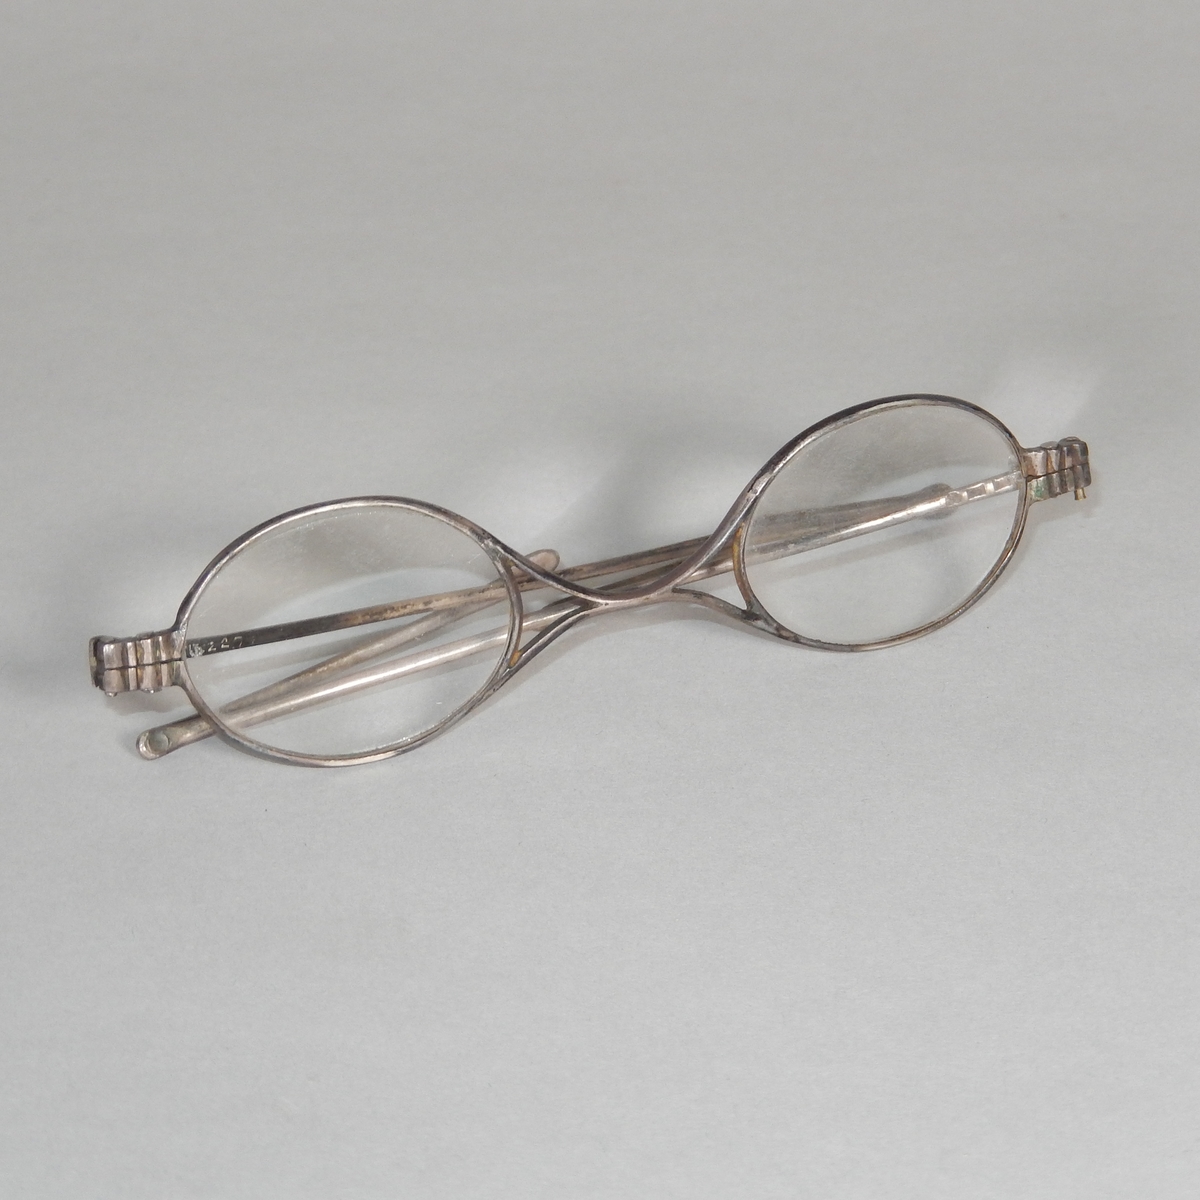 Glasögon med ovala glas och metallbåge. Skalmarna består av två delar som kan fällas ut och böjas. Glasögonfodral, avlångt, av trä med rundade hörn. En del uppfällbar, metallskodd, för att kunna ta ut glasögonen.